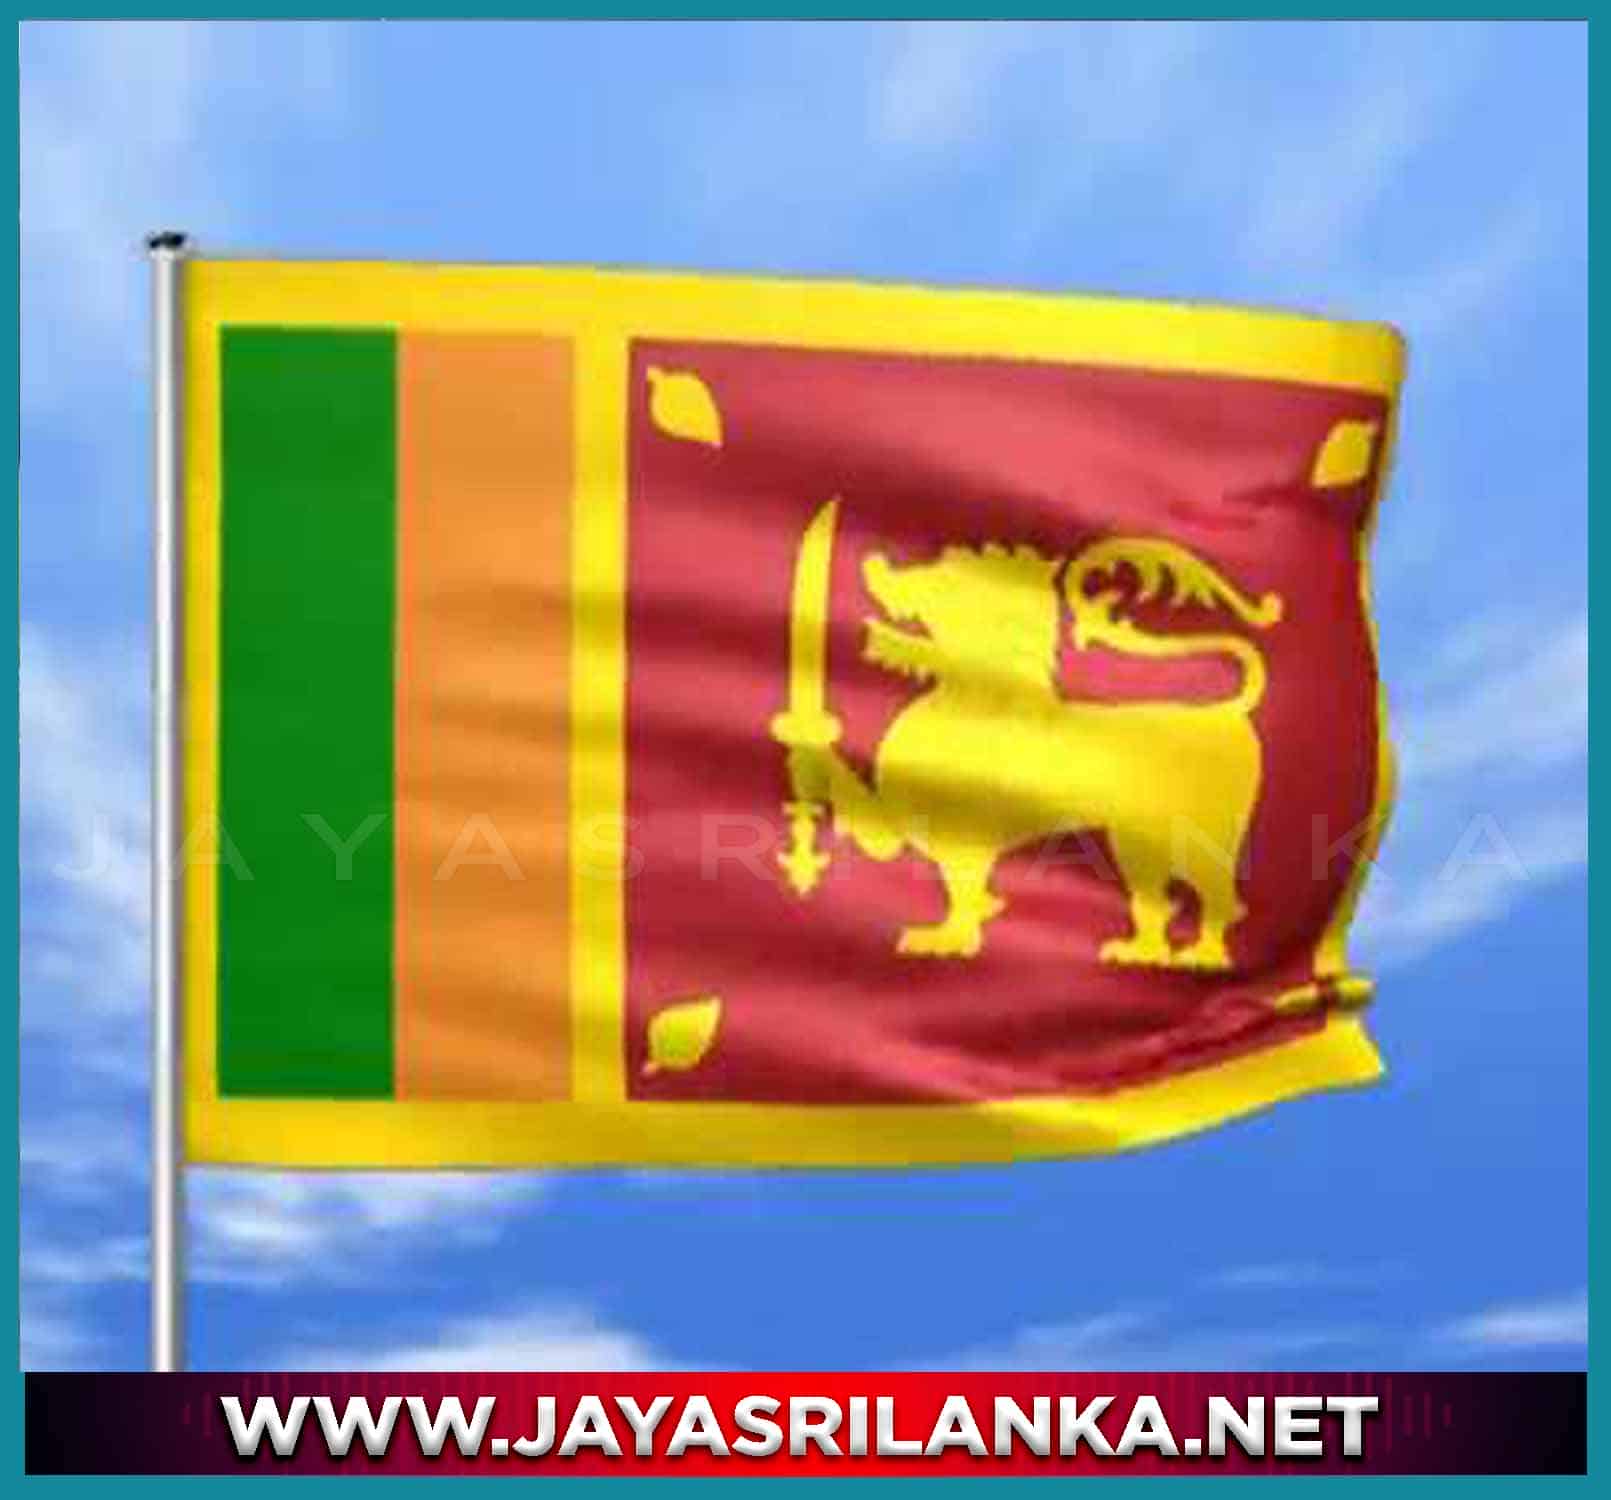 Sri Lankan National Anthem (Sri Lanka Matha)